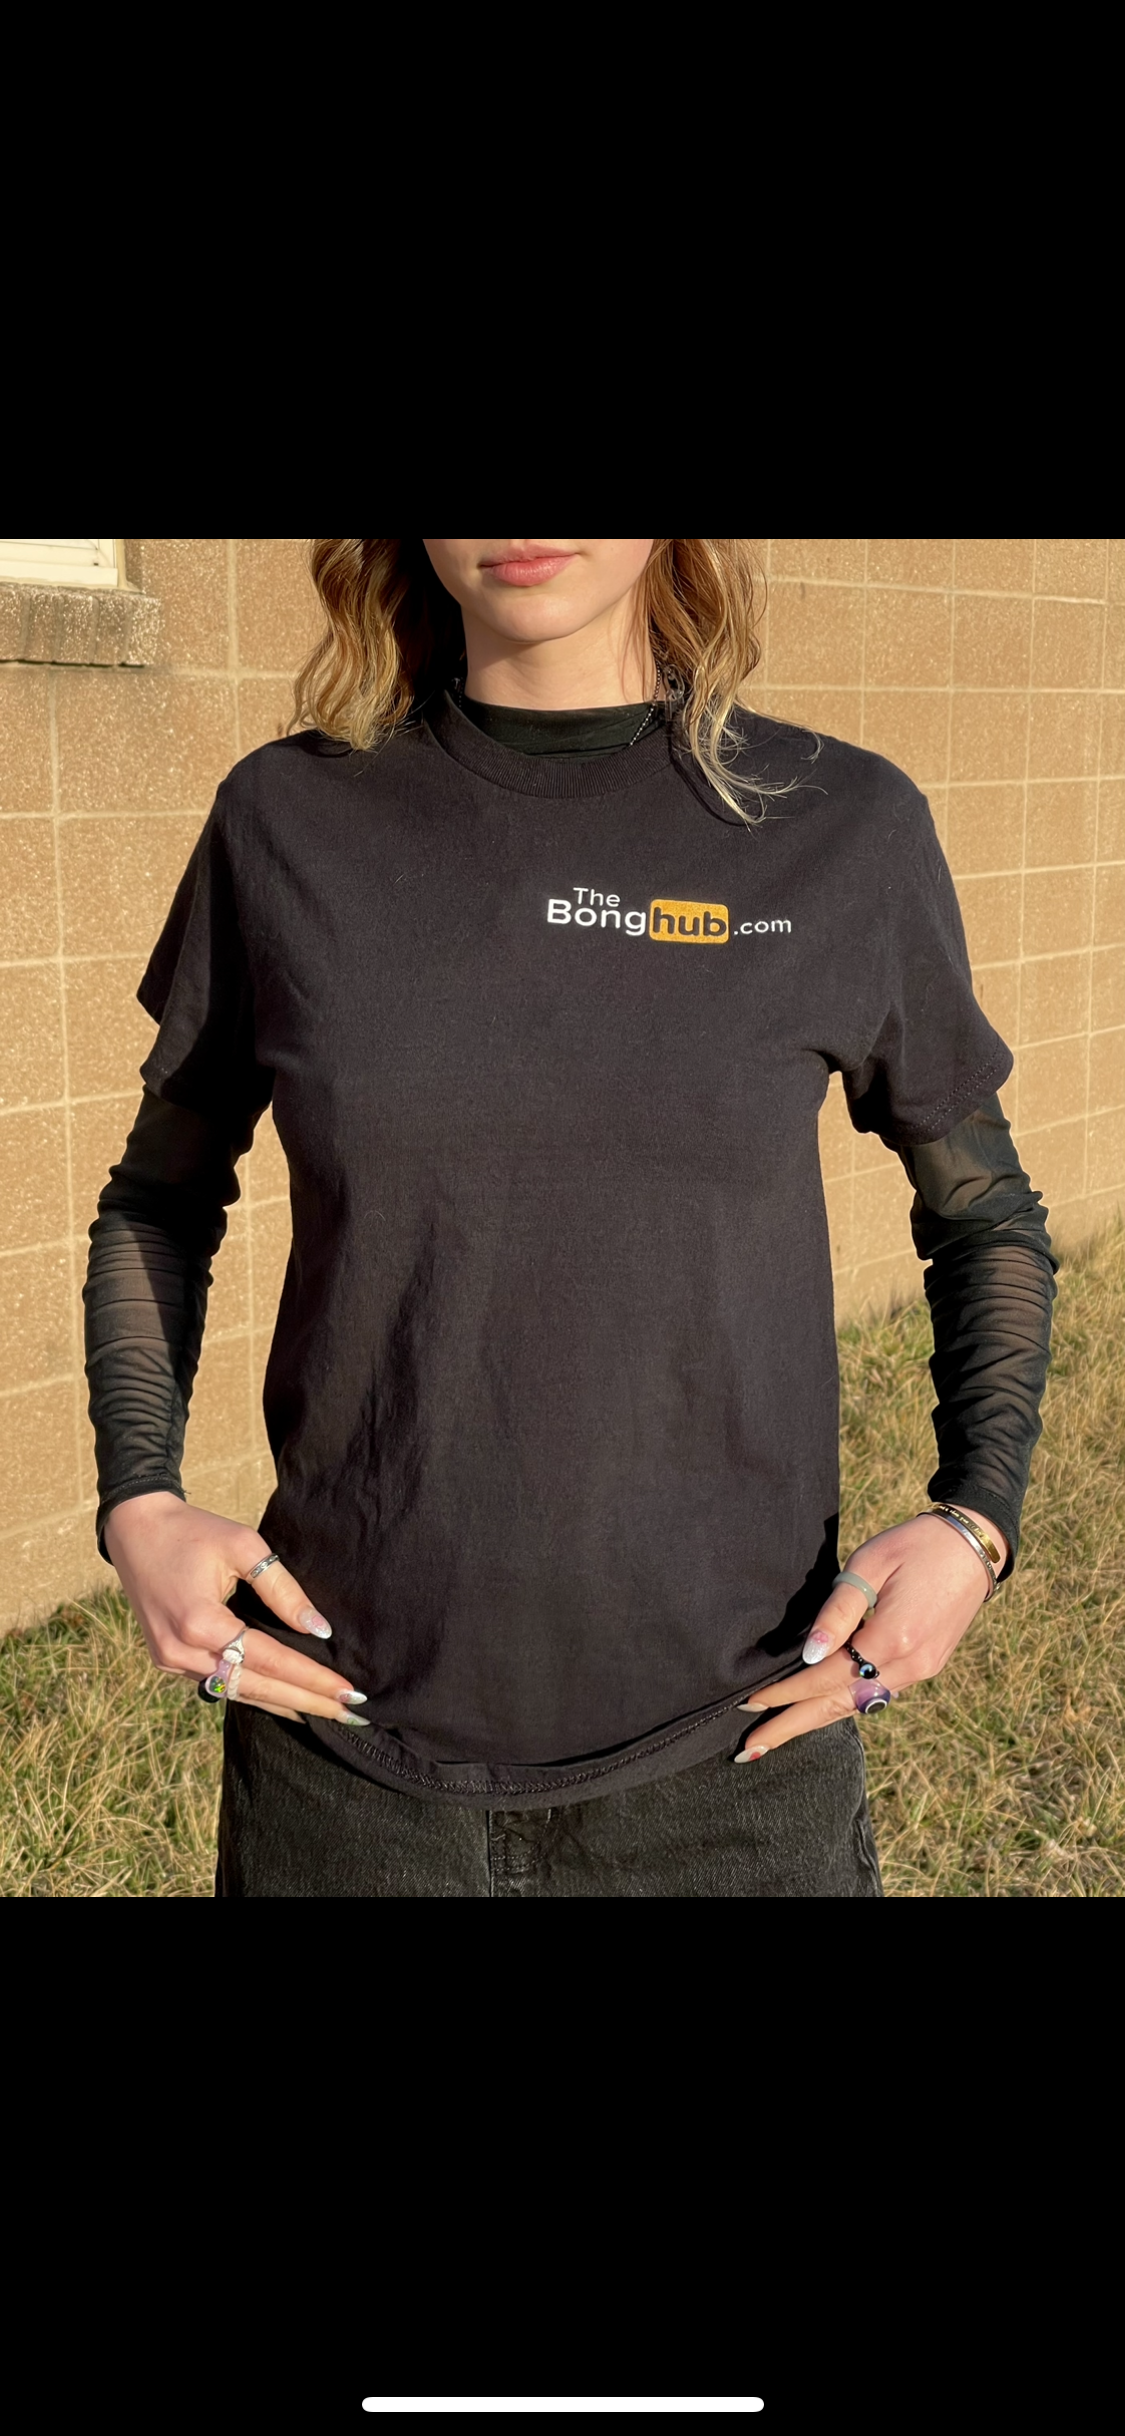 The Bong Hub T-Shirt